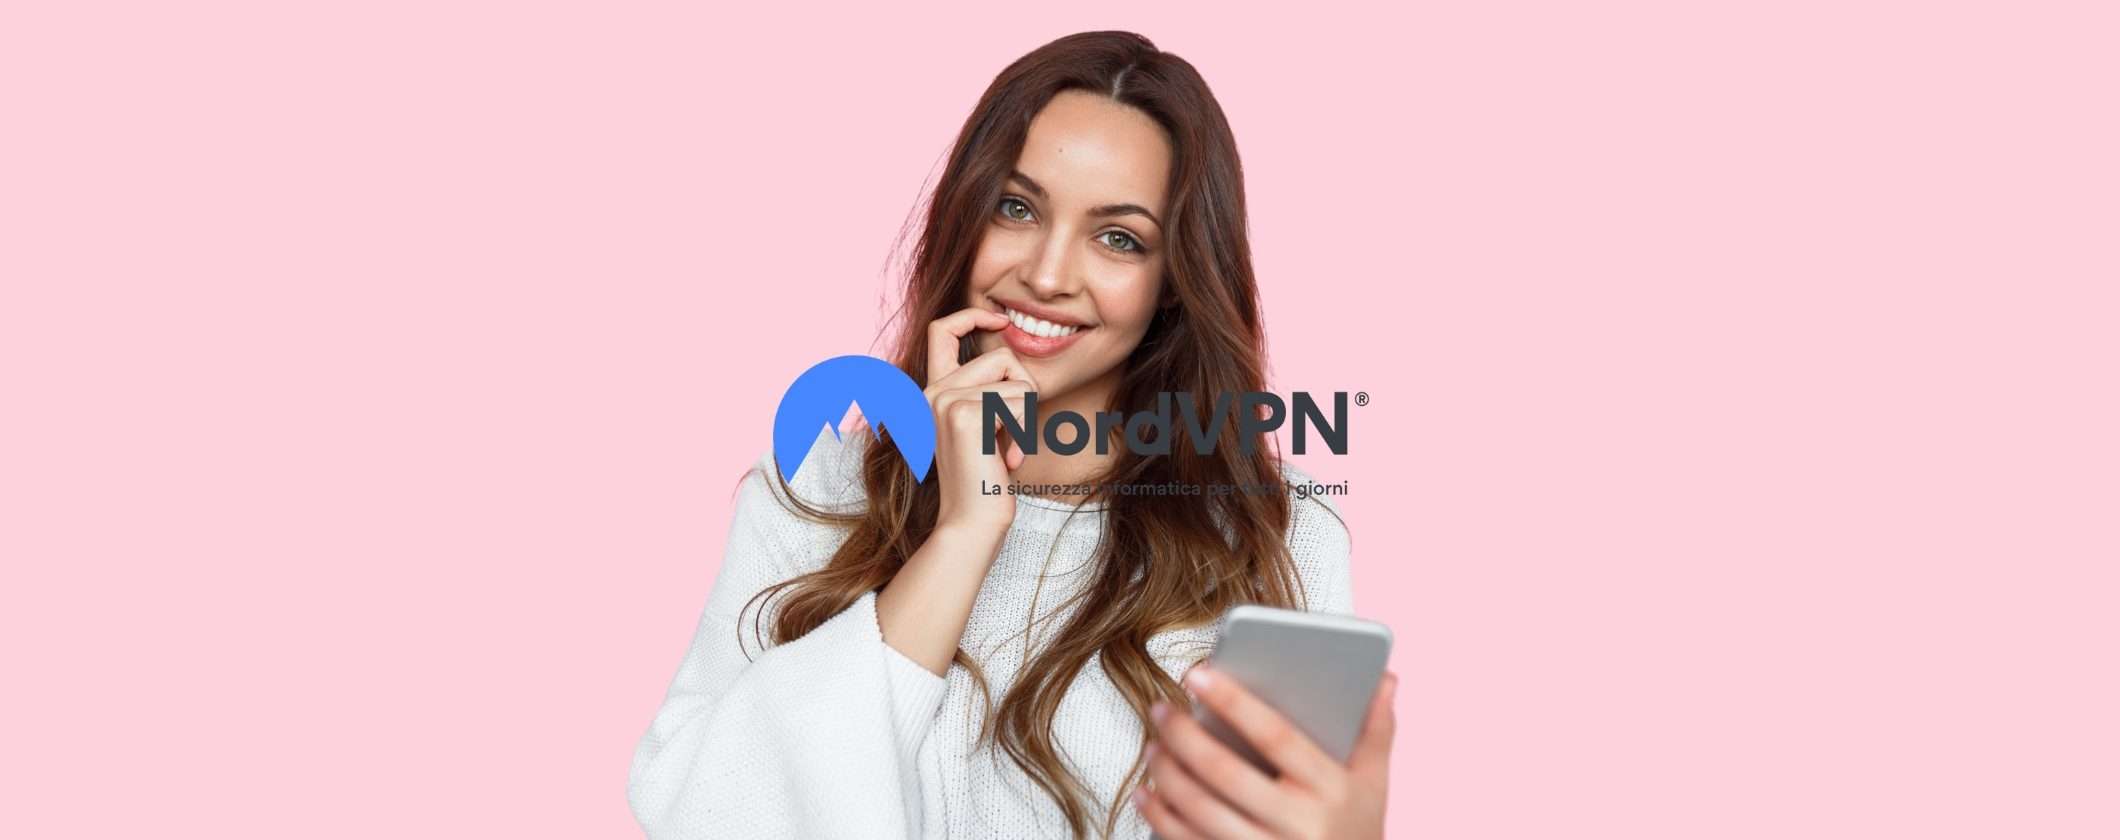 NordVPN ti assicura una navigazione protetta al 100%